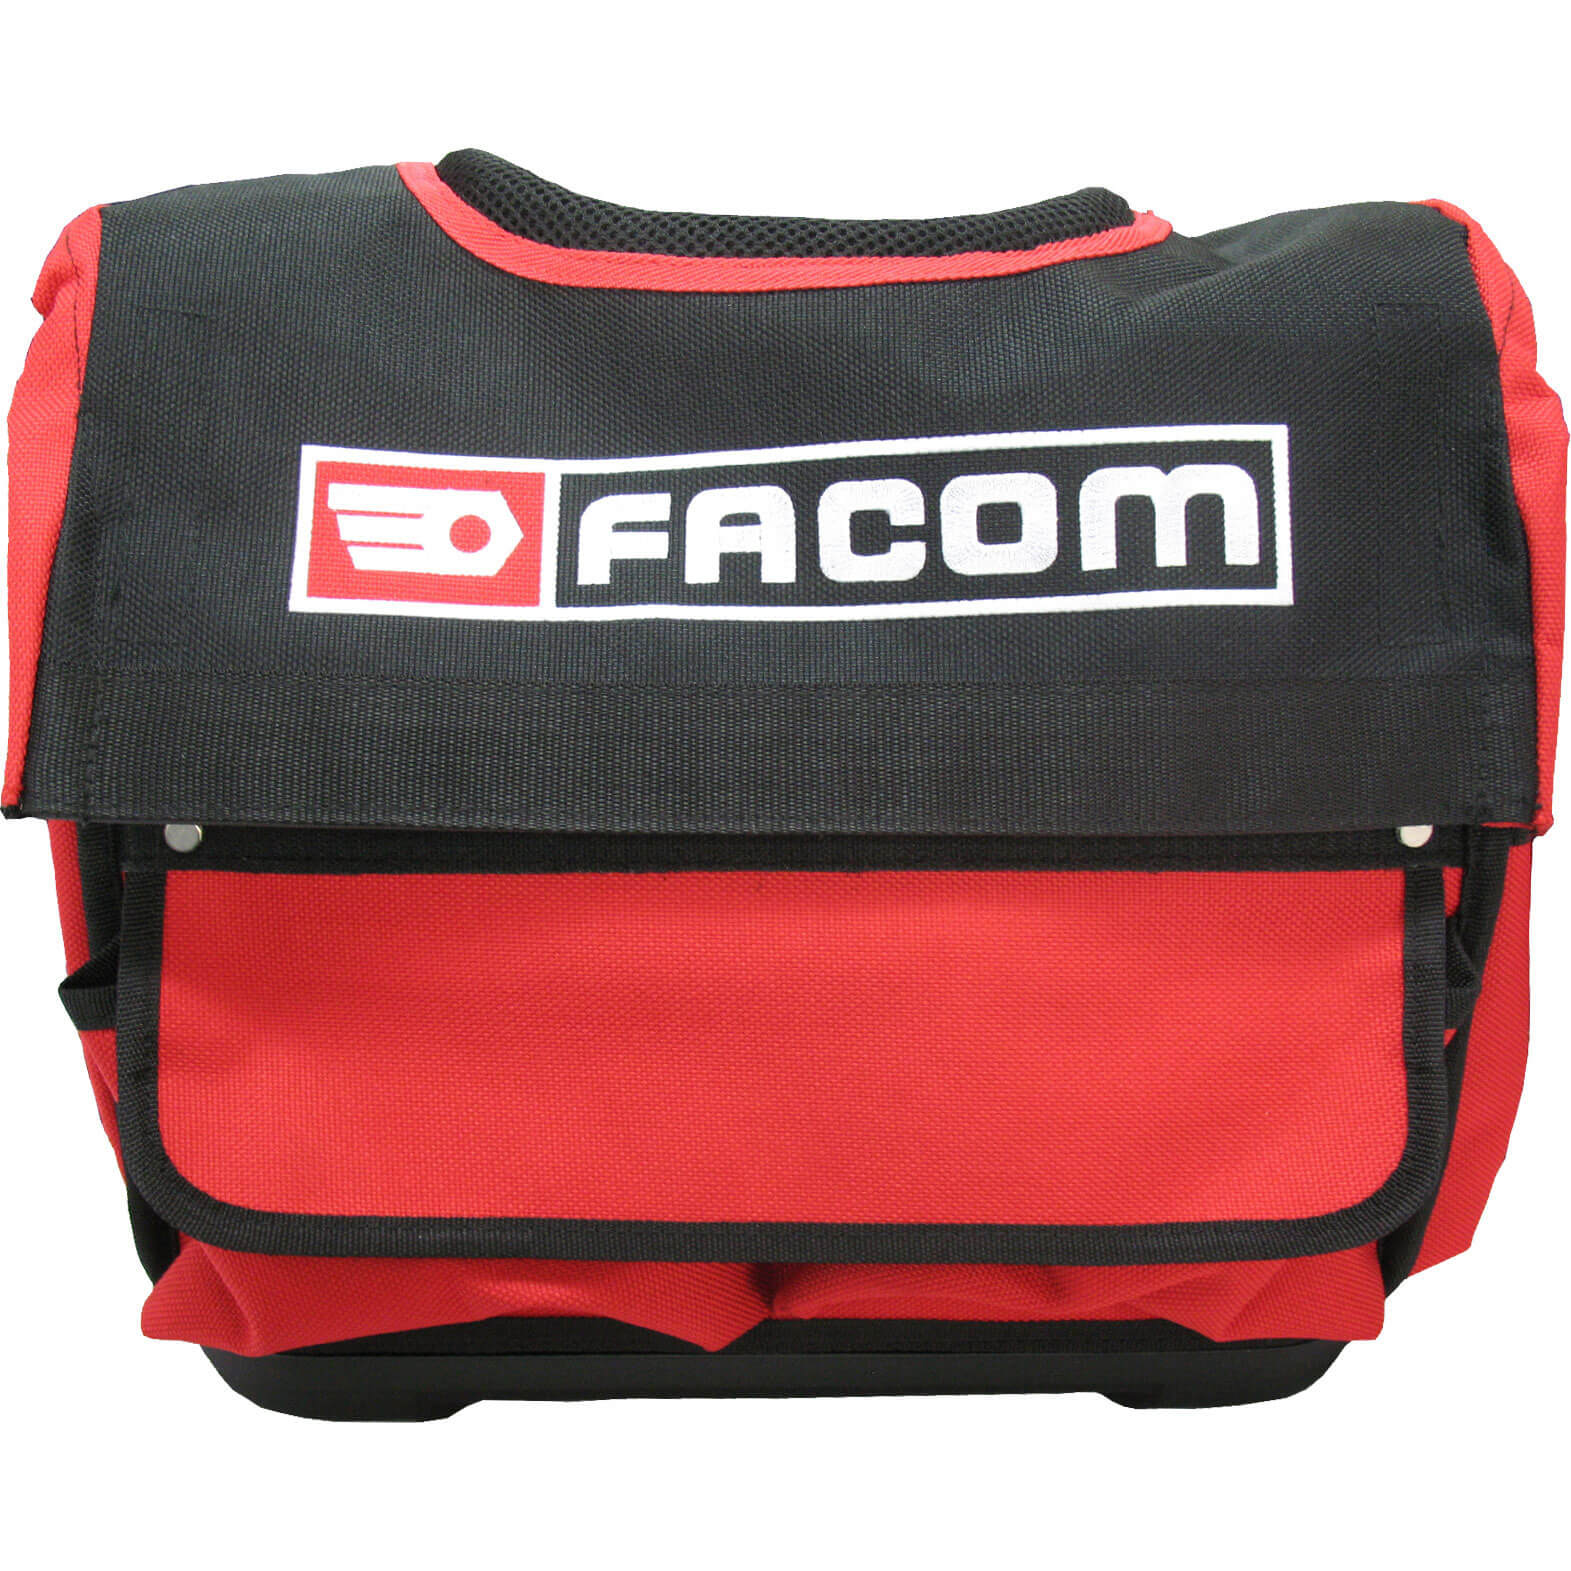 Photo of Facom Pro Soft Tool Bag 400mm